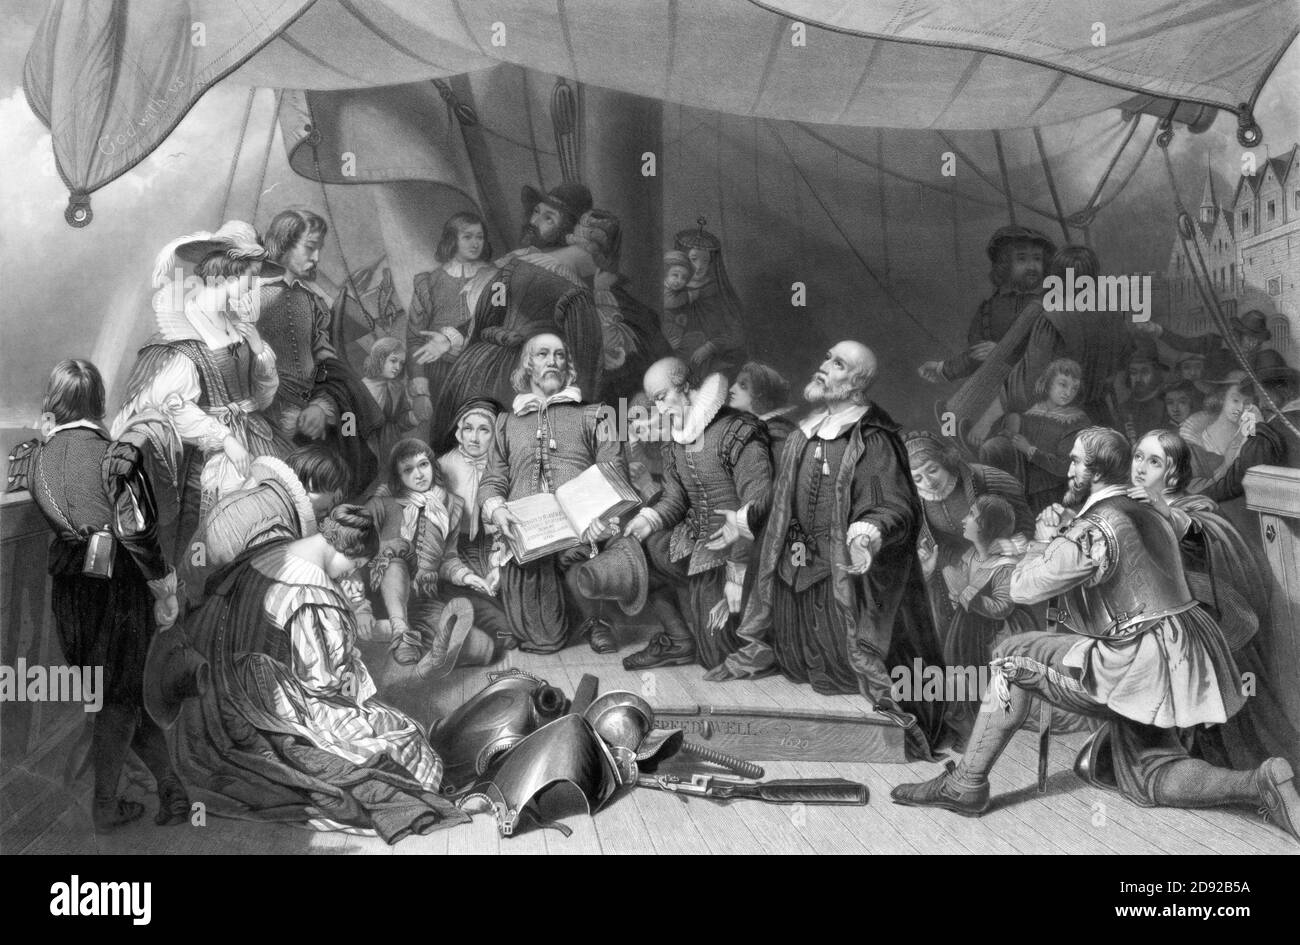 Embarquement des pèlerins, gravure de Samuel Bellin à partir d'une peinture de Robert W. Weir, 1844. Myles Standish (c. 1584-1656) est montré au premier plan à droite avec sa femme, Rose. Banque D'Images